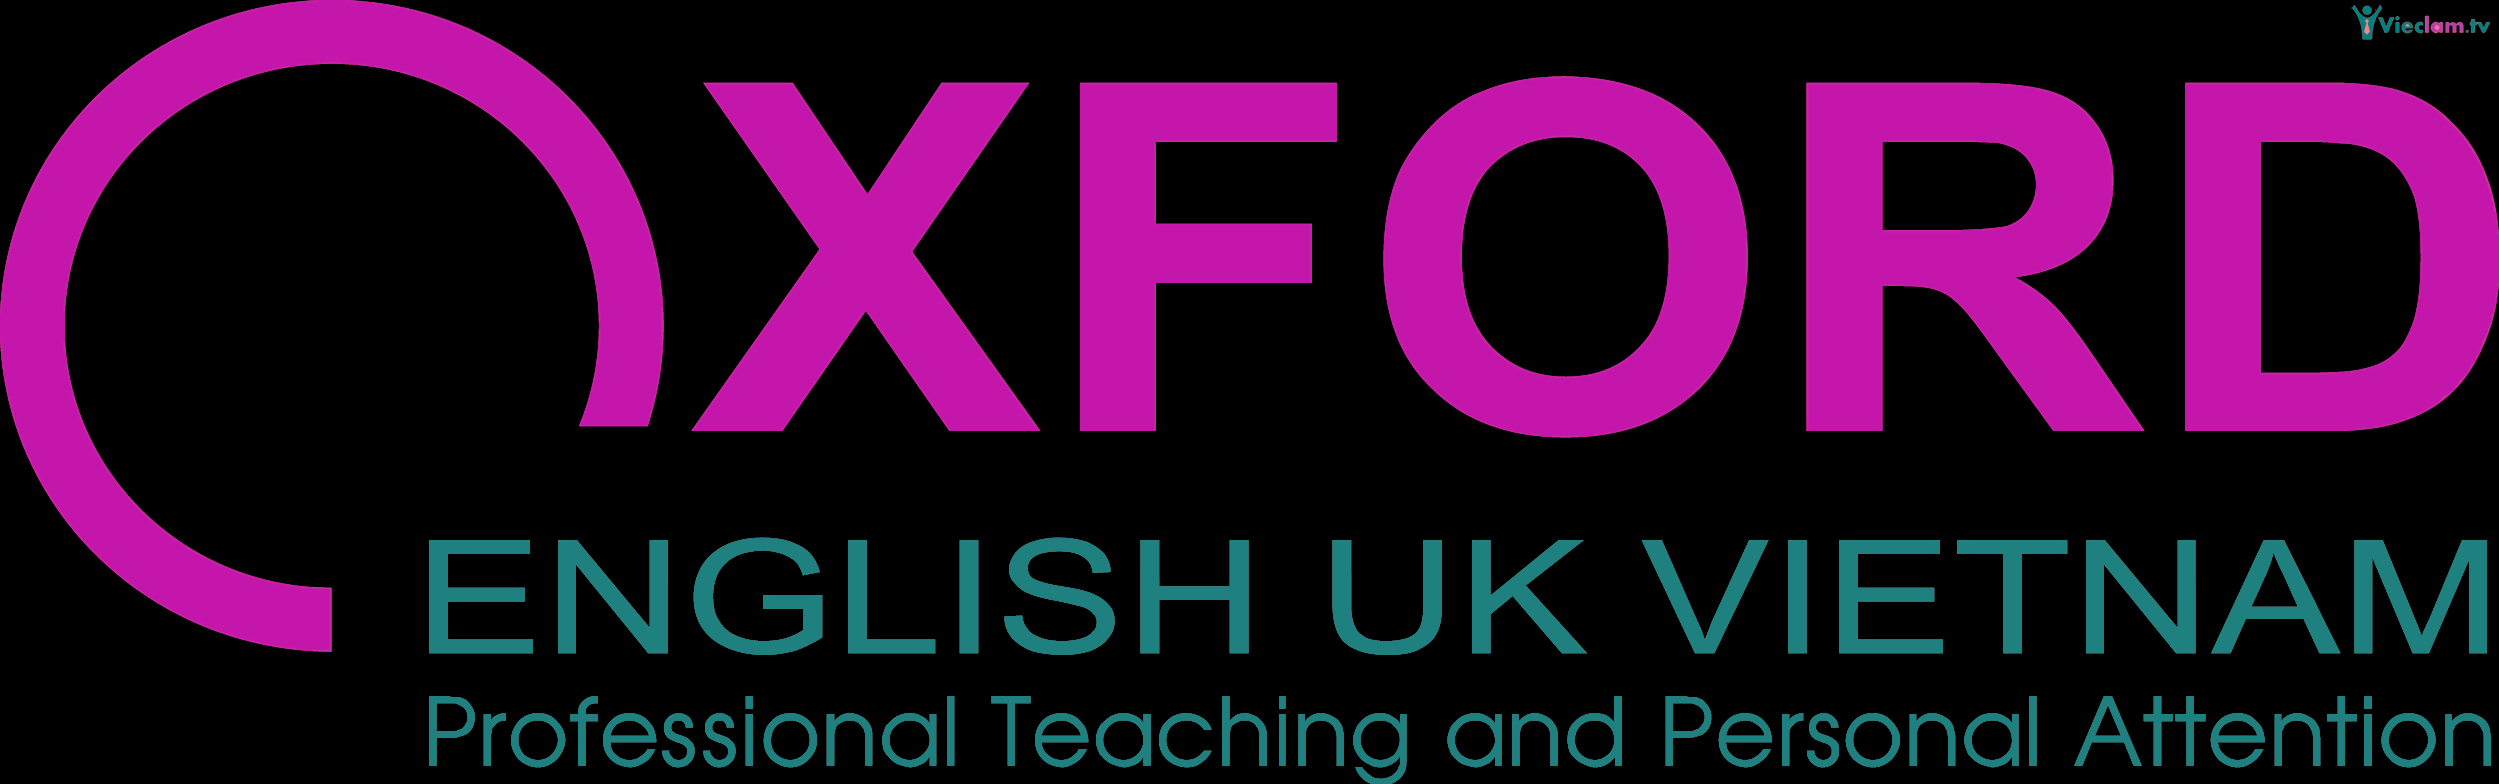 Logo Trung tâm đào tạo Oxford English UK Vietnam